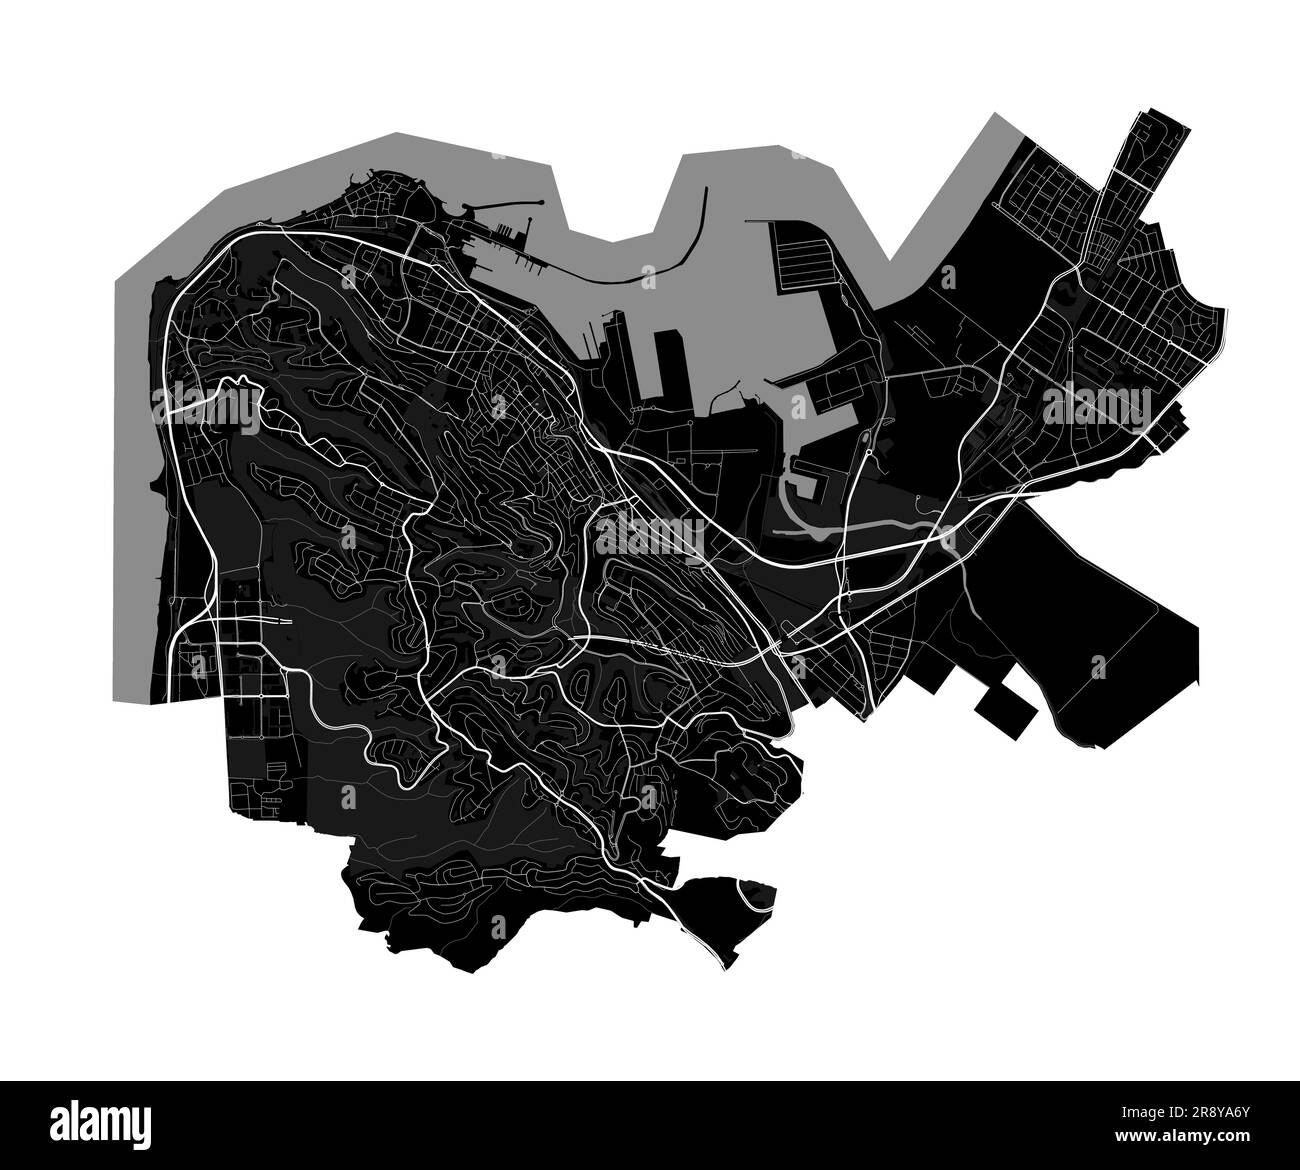 Carte de Haïfa. Carte détaillée en noir de la zone administrative de la ville de Haïfa. Vue sur l'aria métropolitain avec affiche CityScape. Terre noire avec bâtiments blancs, eau, avant Illustration de Vecteur